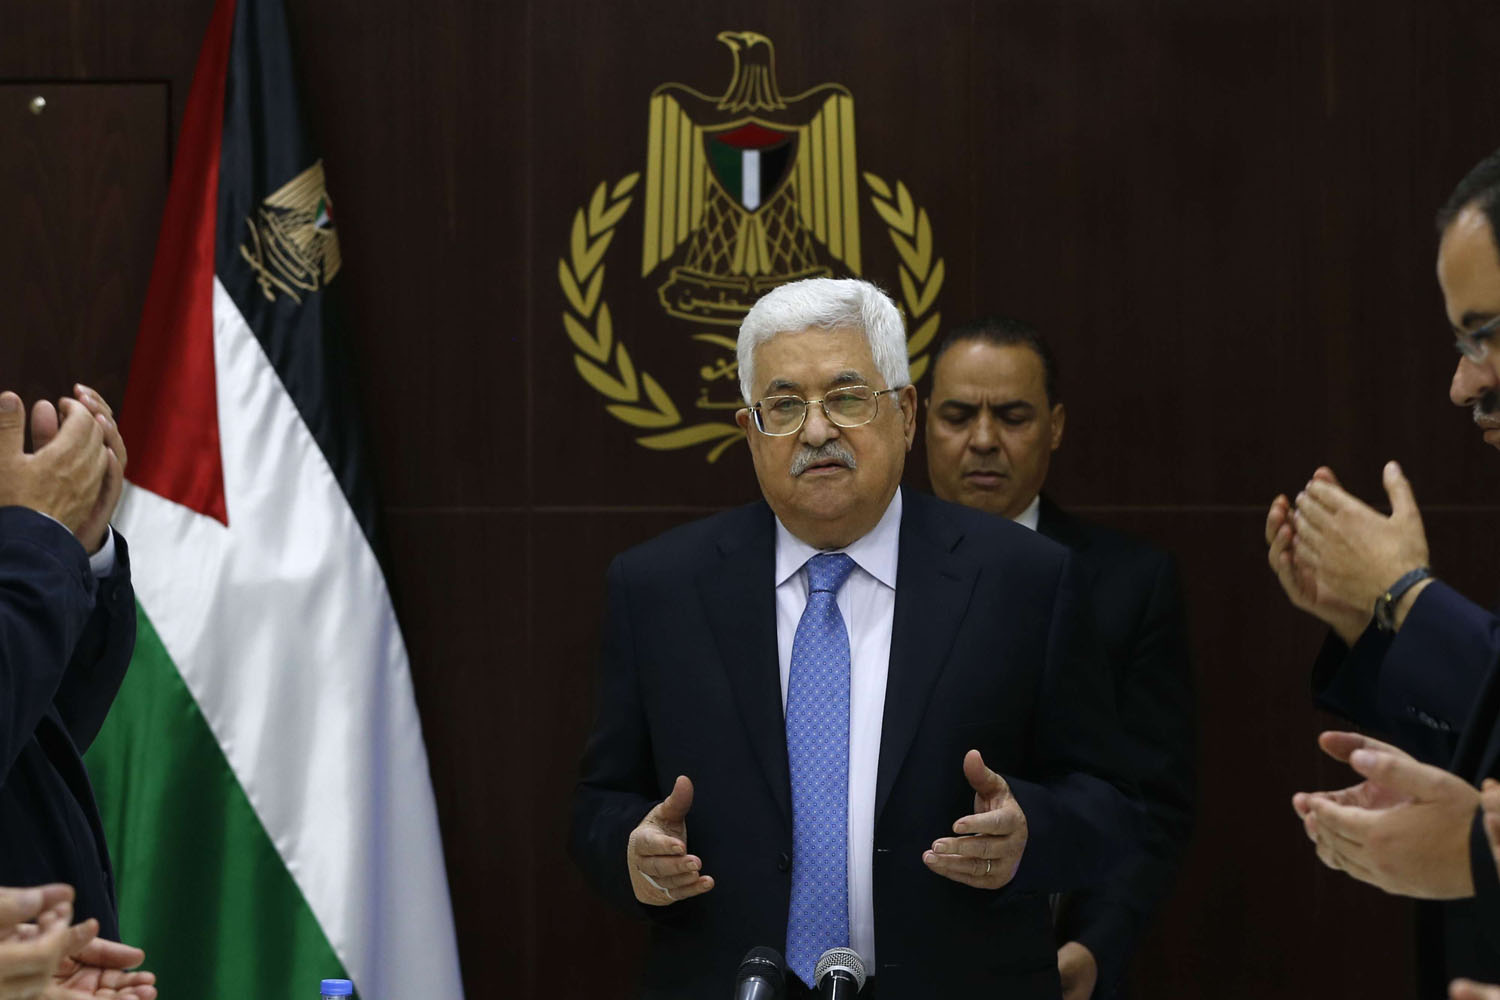 الرئيس الفلسطيني محمود عباس بعد عودته من أزمة صحية